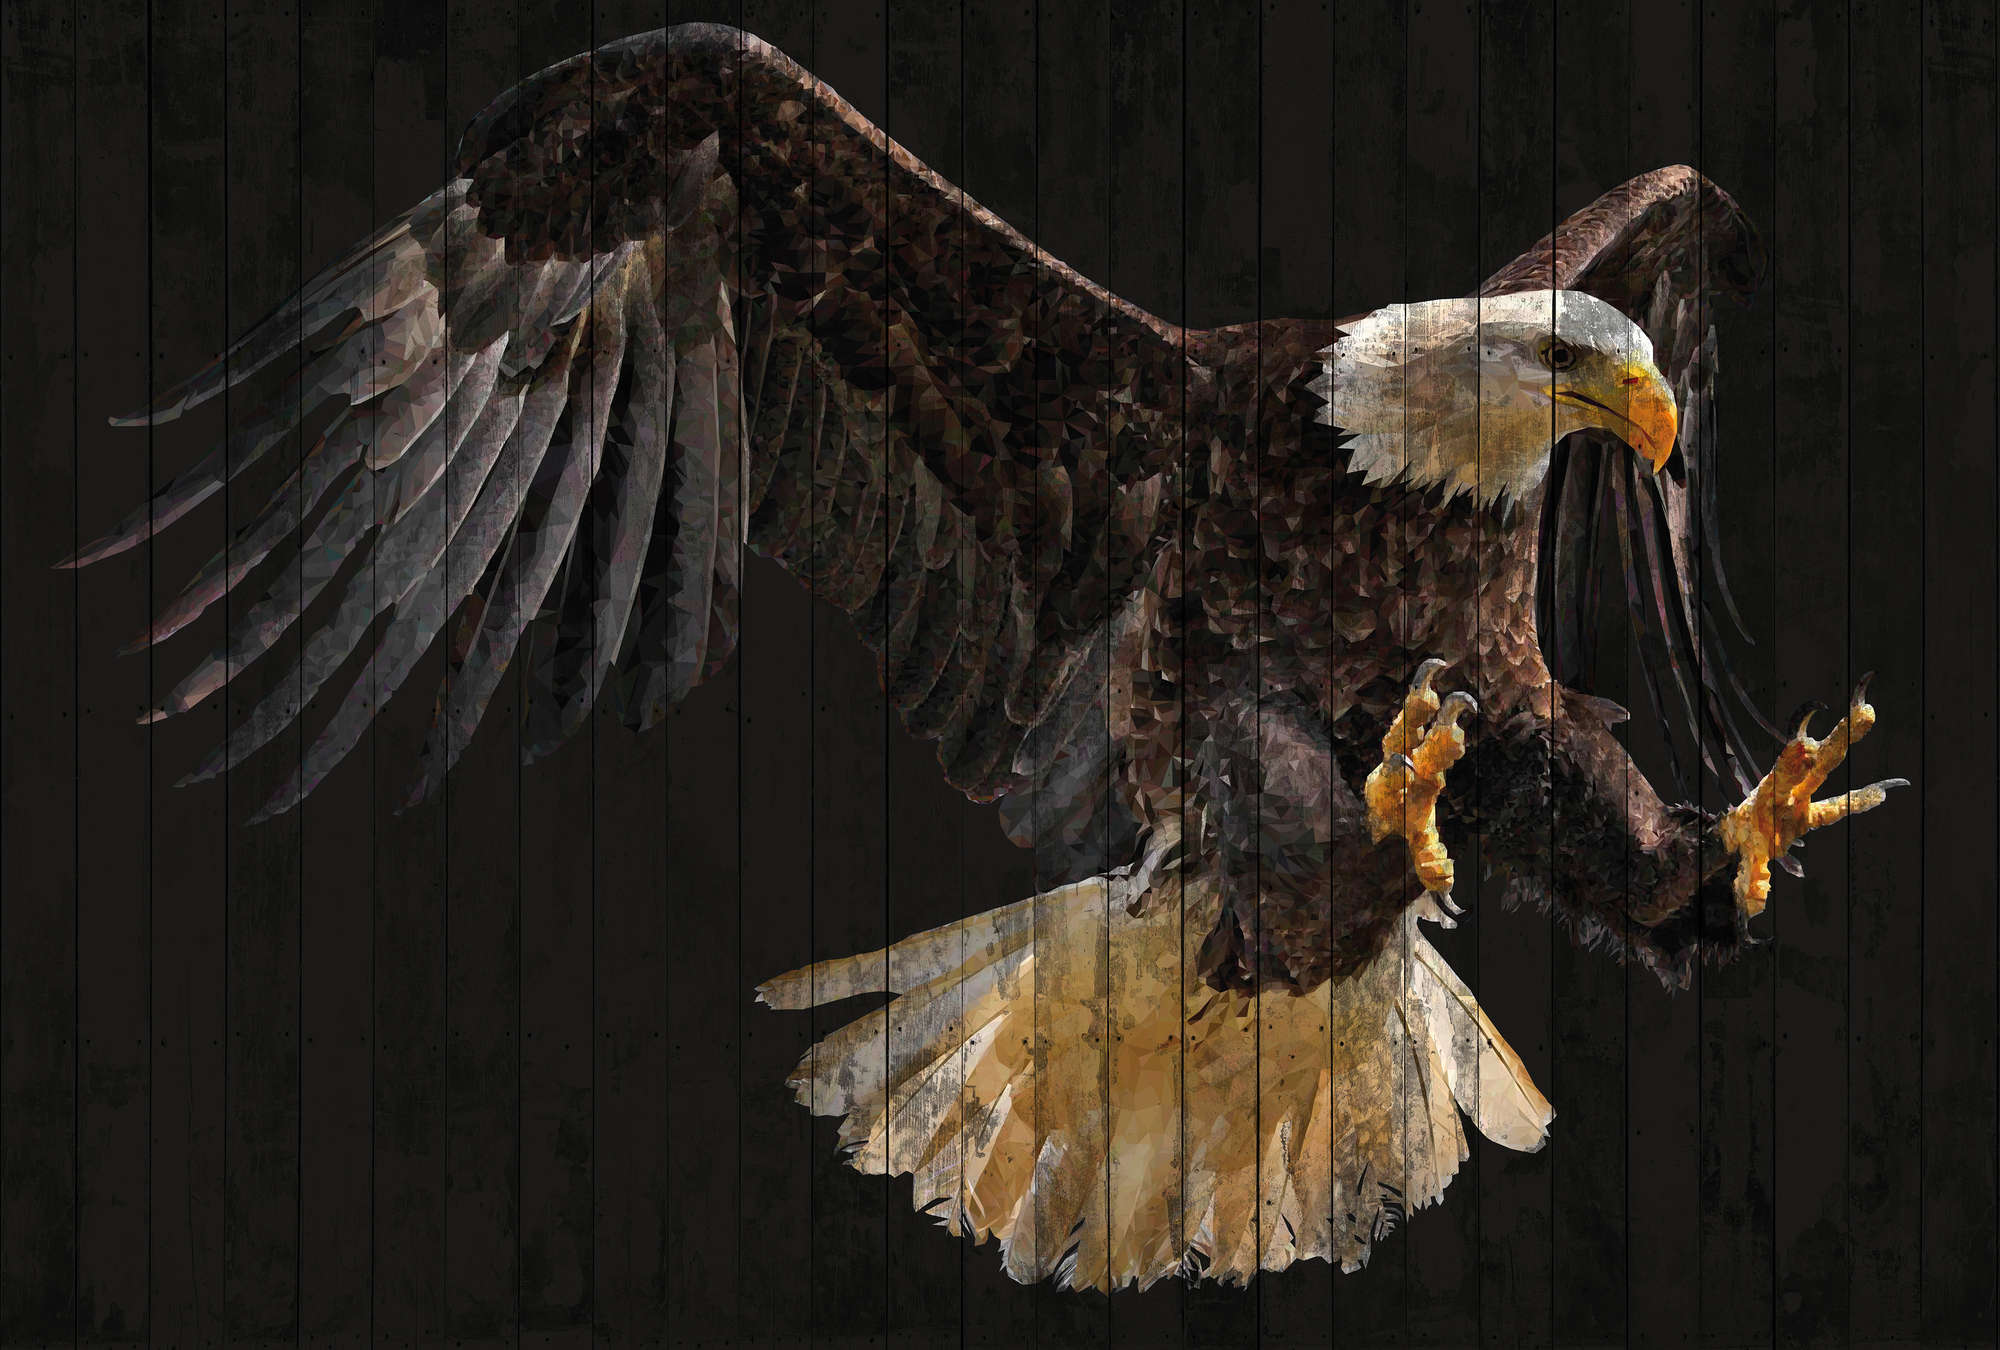             Muurschildering adelaar, dierenmotief & houtlook - bruin, oranje, zwart
        